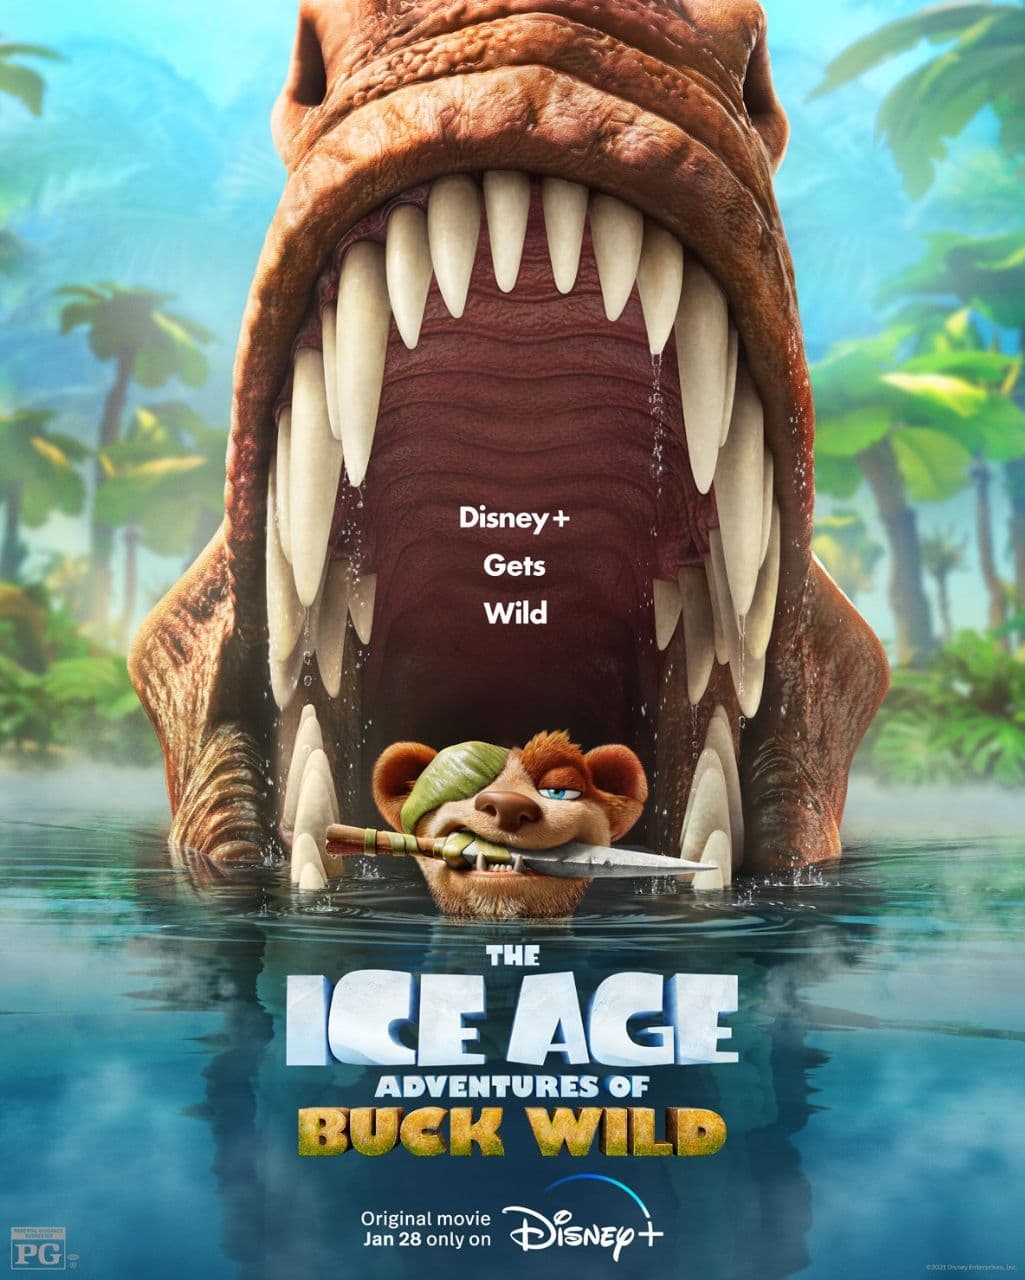 پوستر رسمی ششمین فیلم از سری انیمیشن های «عصر یخبندان» با عنوان Ice Age: Adventures of Buck Wild منتشر شد. ?انتشار از دیزنی پلاس: ١۴٠٠/١١/٠٩